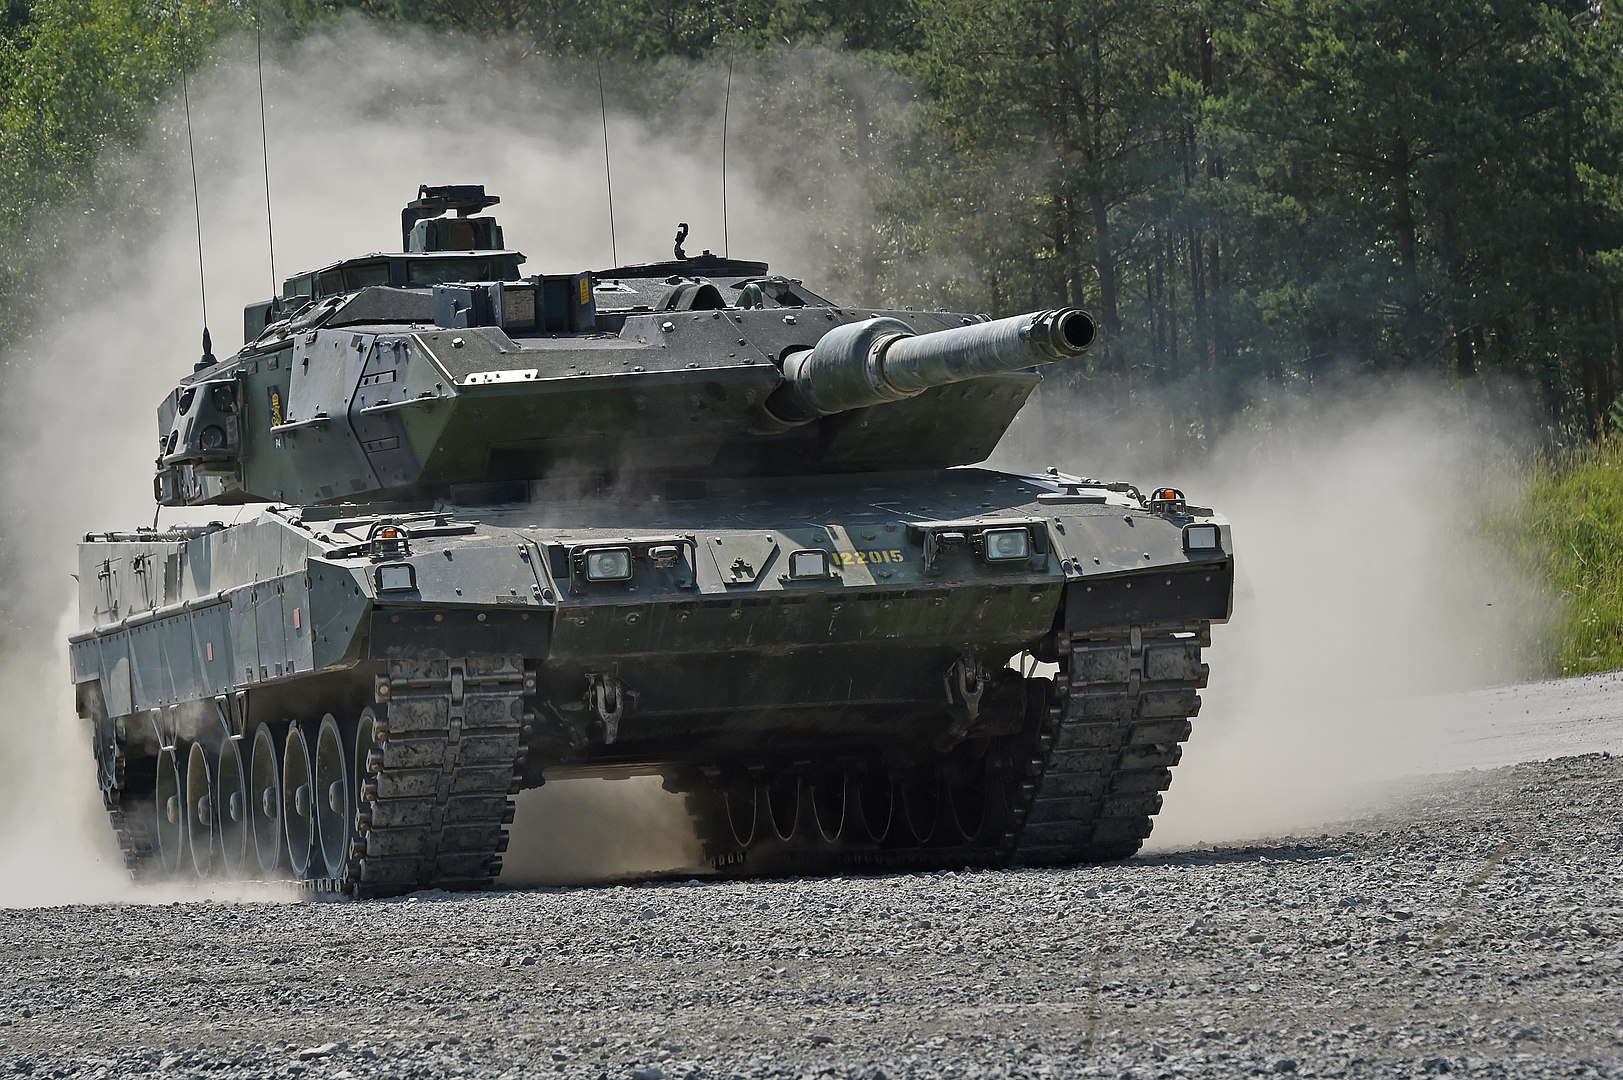 Szwecja gotowa wysłać na Ukrainę czołgi Stridsvagn 122 - zmodyfikowane Leopardy 2A5 z ulepszoną ochroną